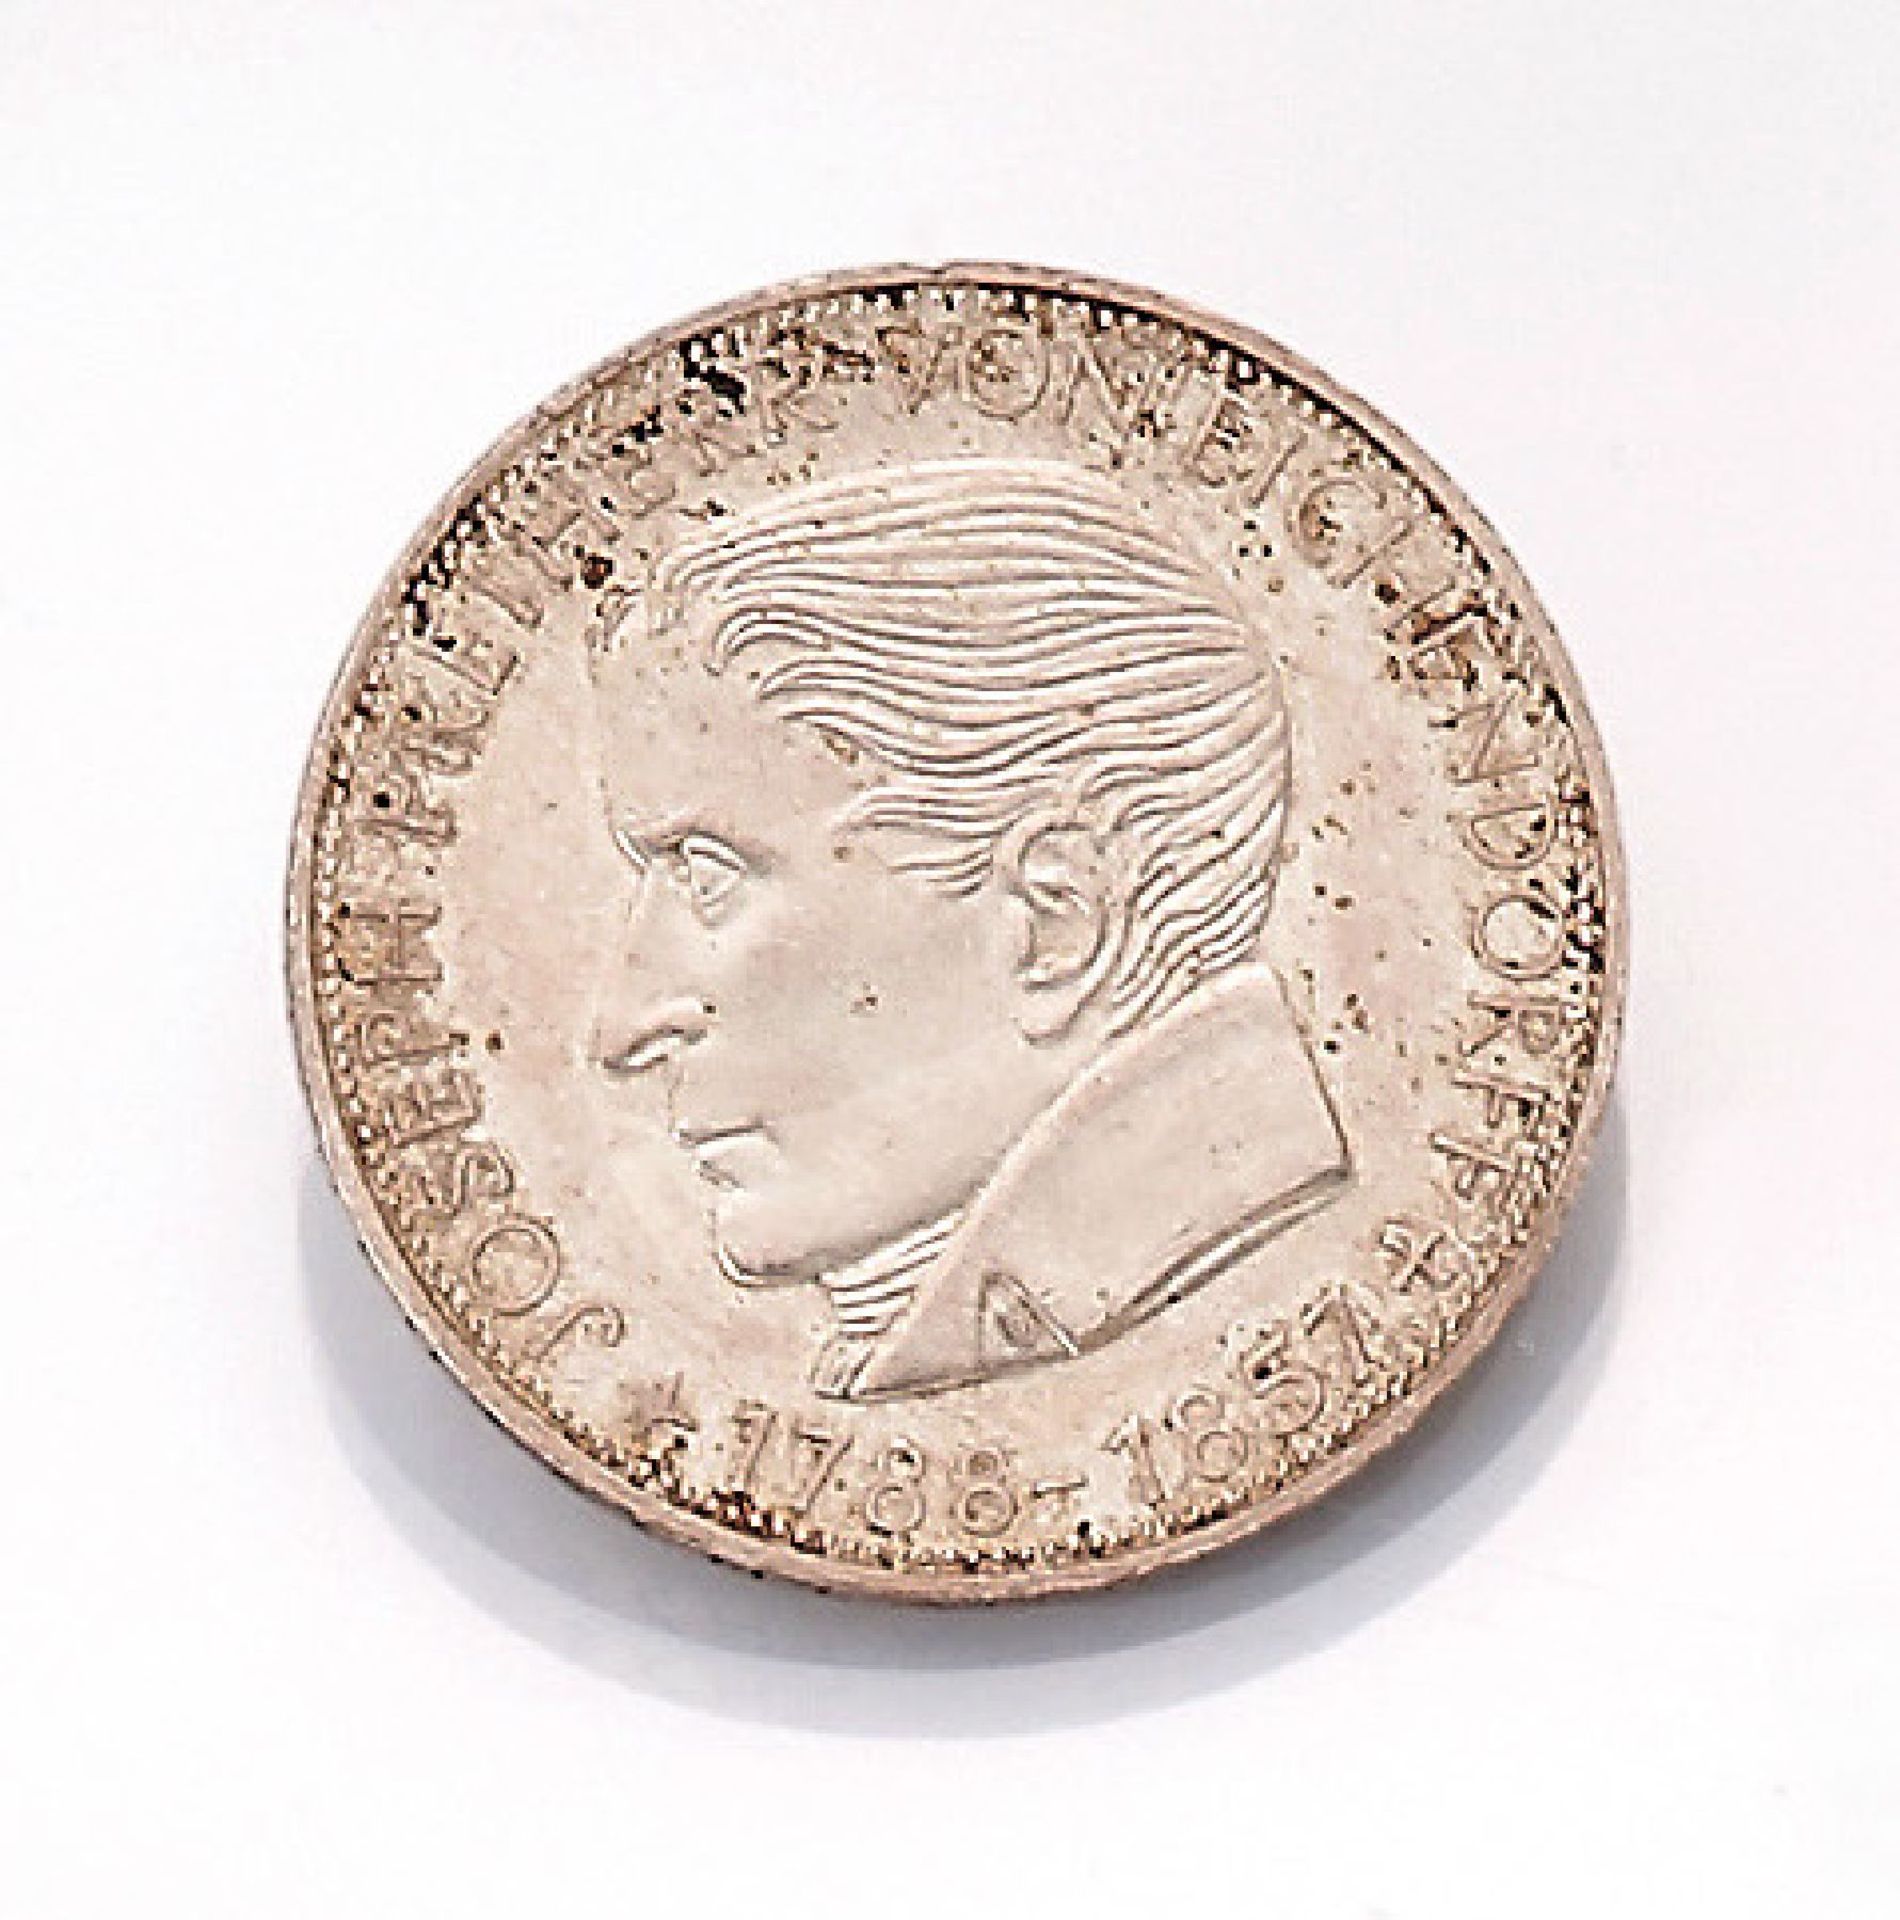 Silbermünze, 5 Mark, Deutschland, 1957, Joseph Freiherr von Eichendorff, Prägemarke JSilver coin,